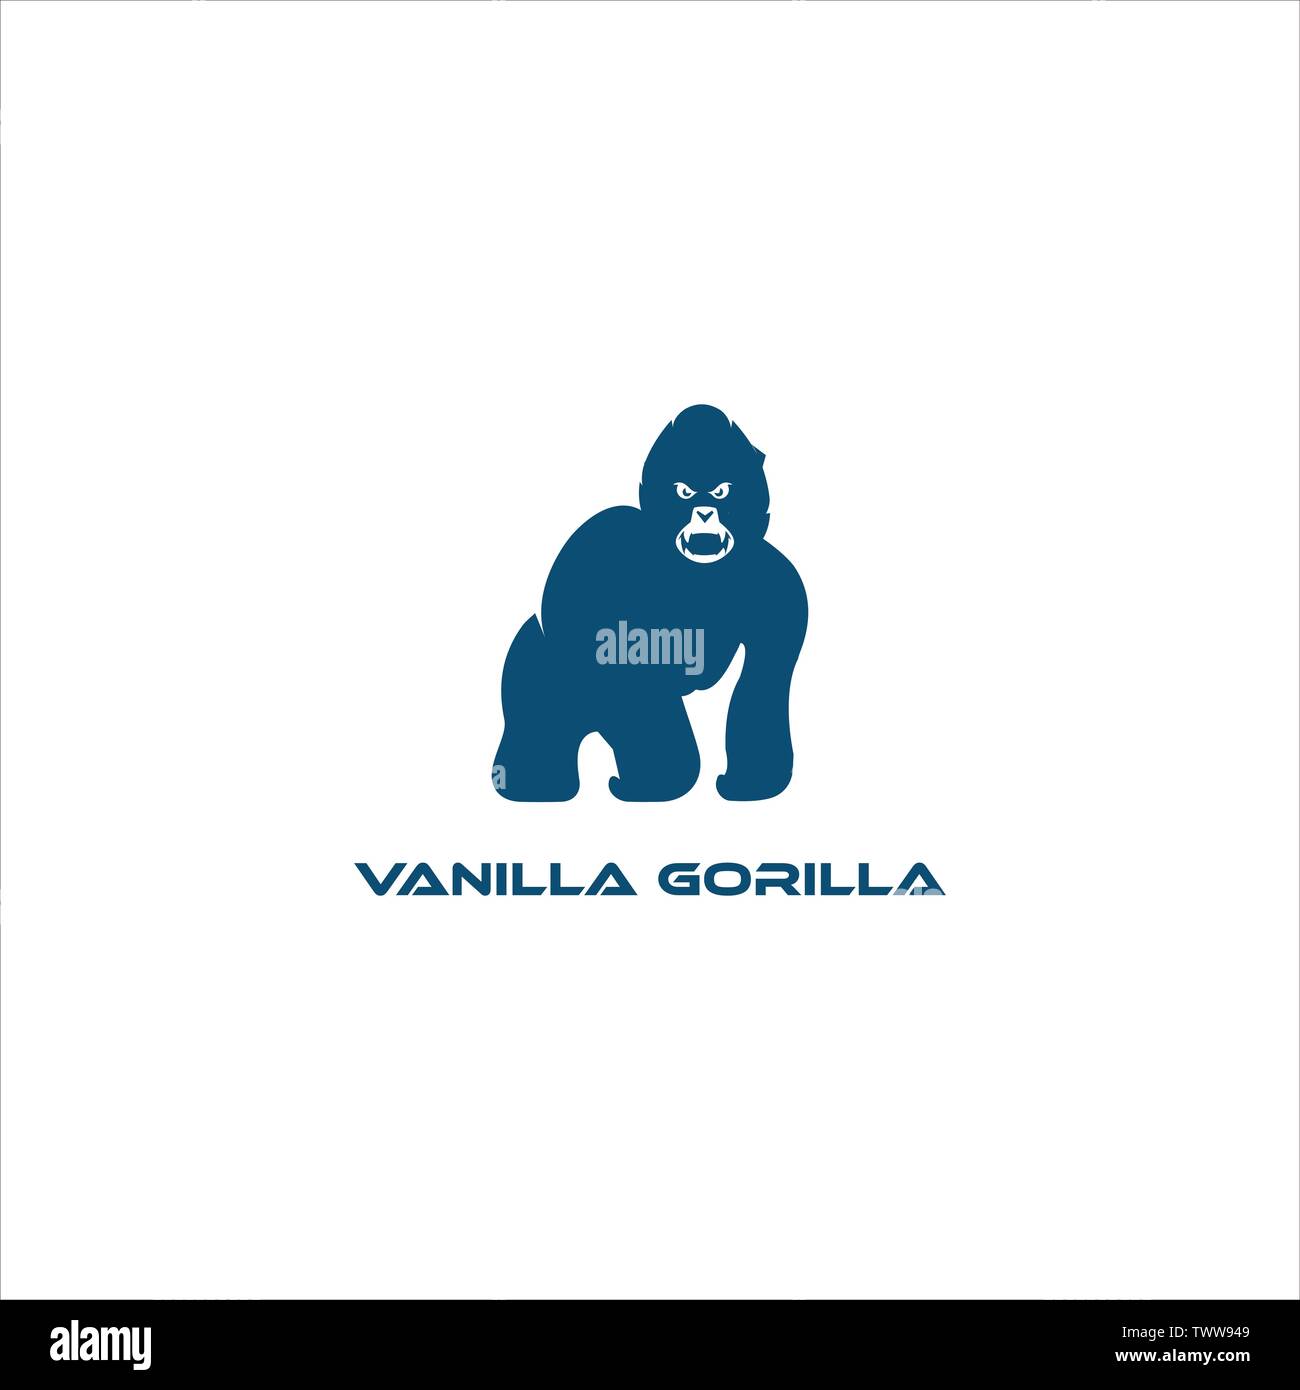 Logo Template Features.Gorilla logo design vector Stock Vector